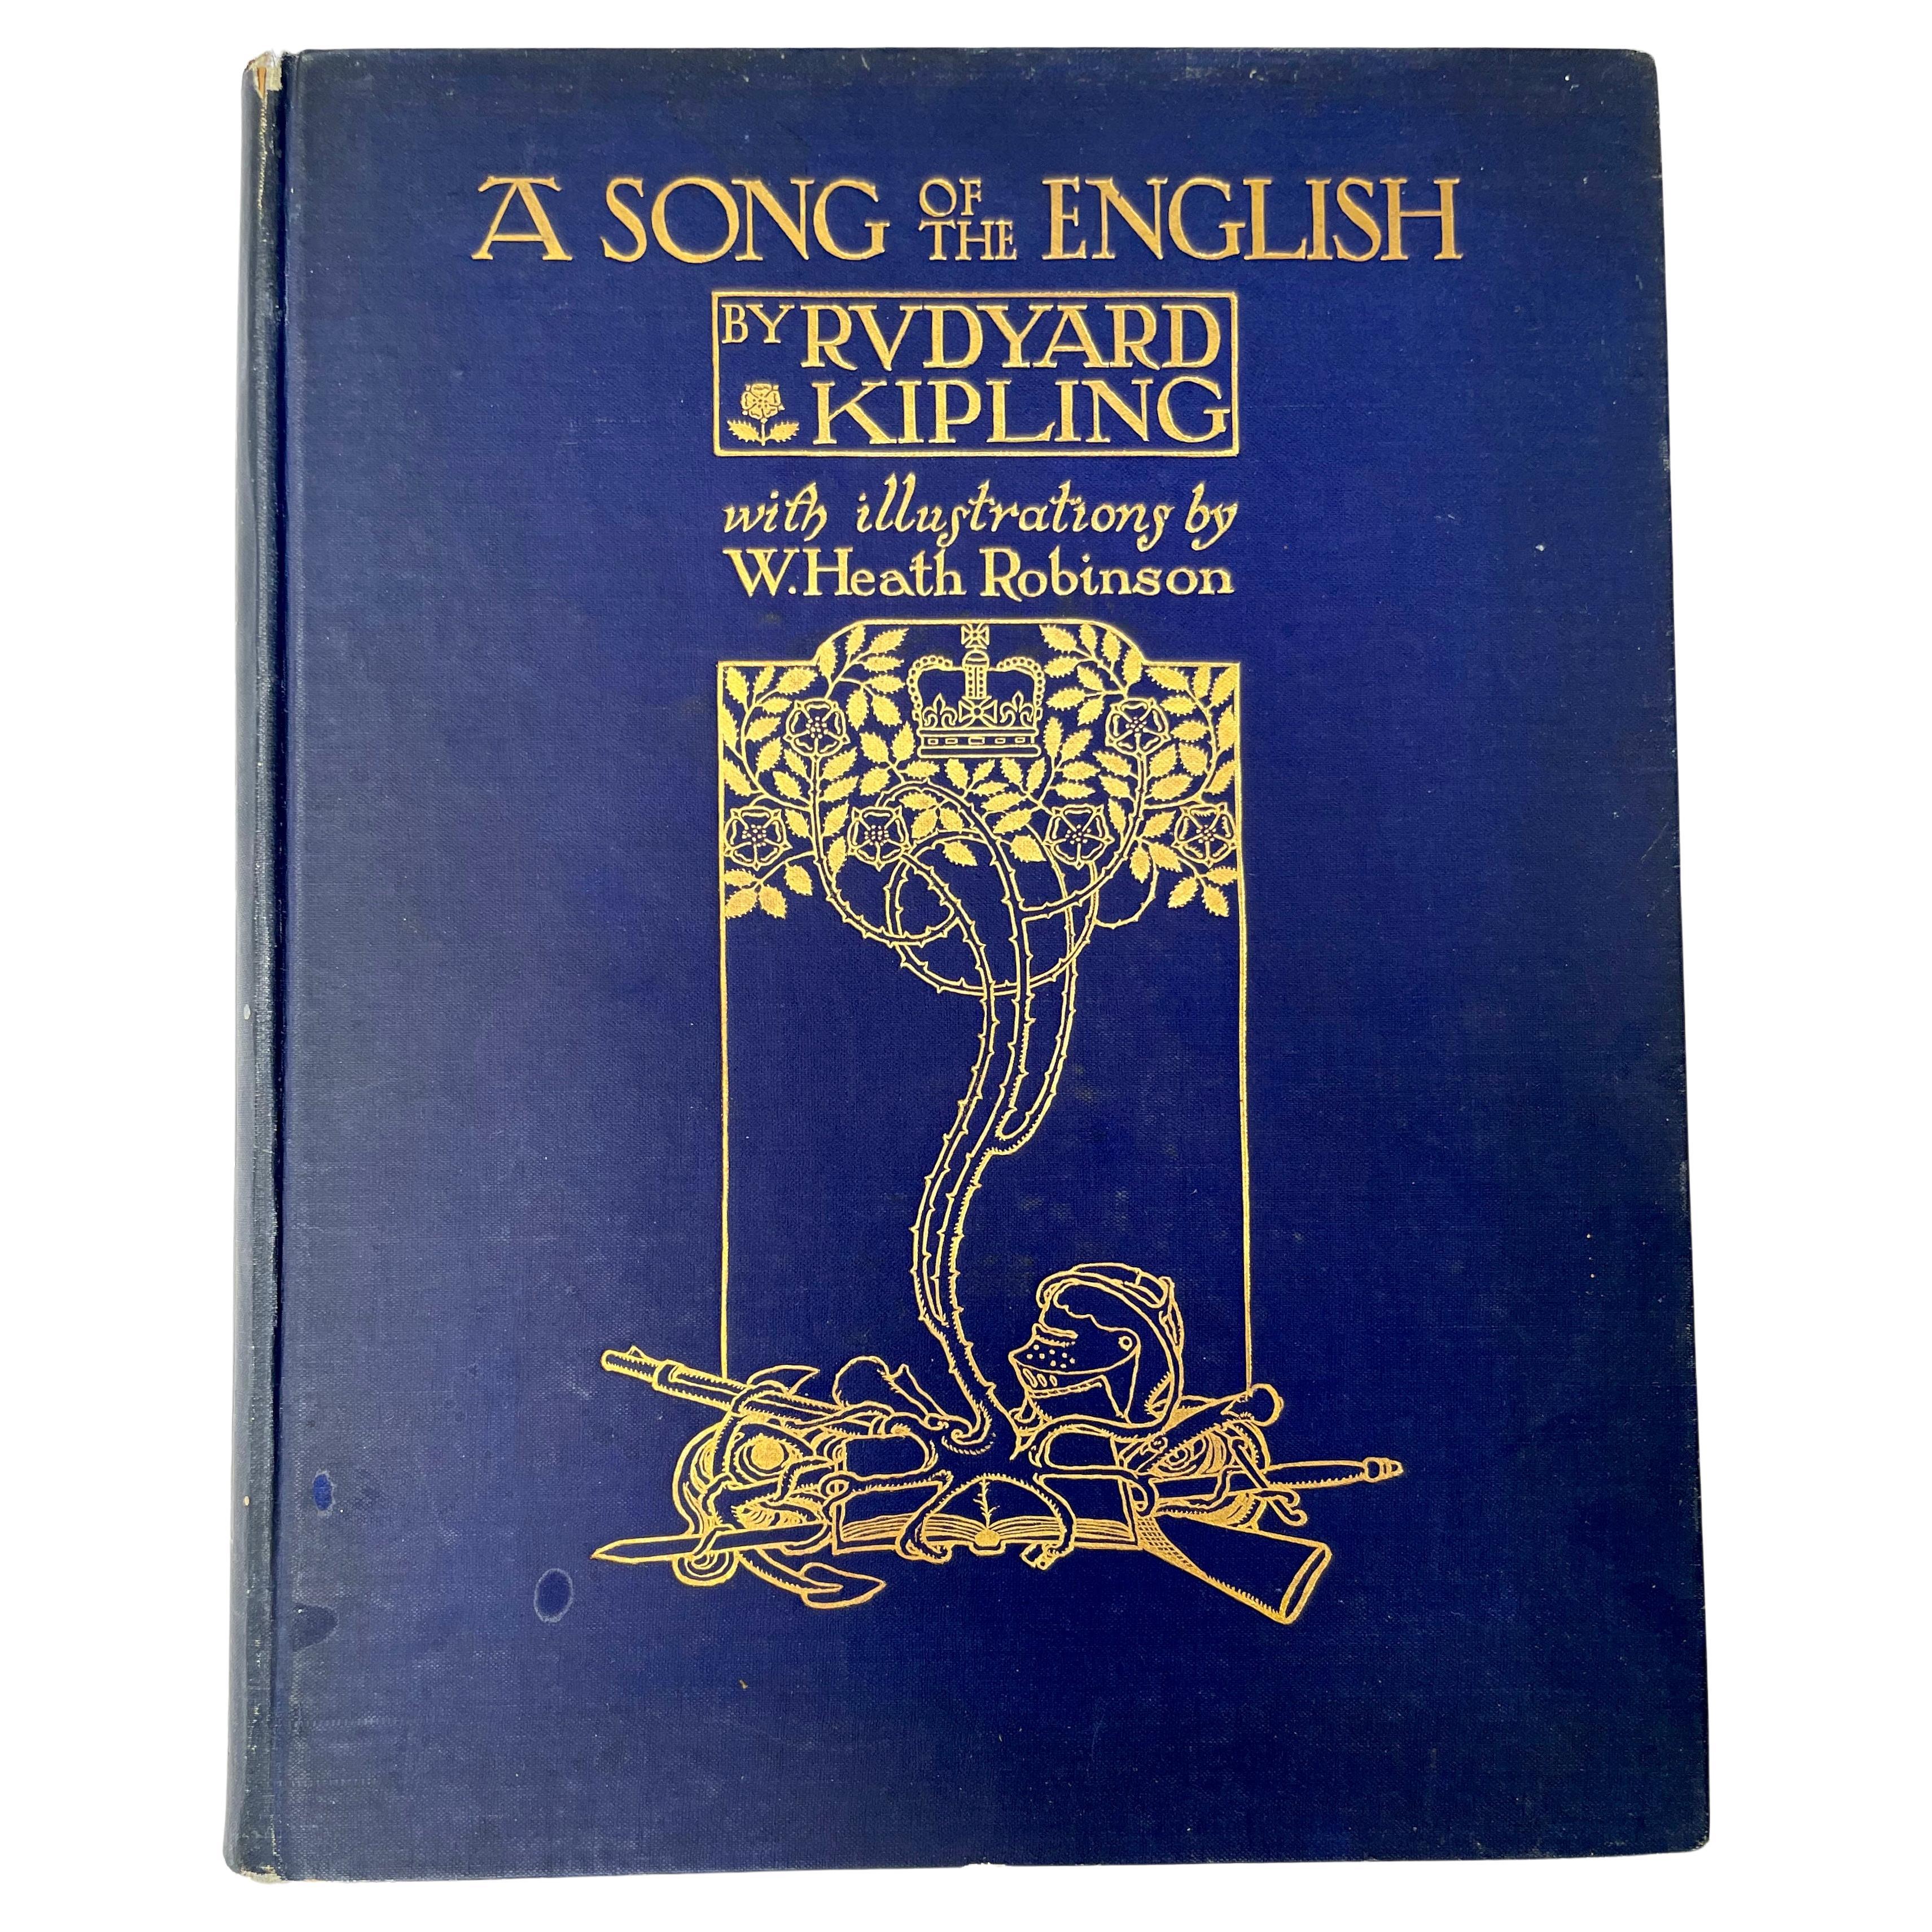 Première édition d'un chant de l'anglais par Rudyard Kipling en vente